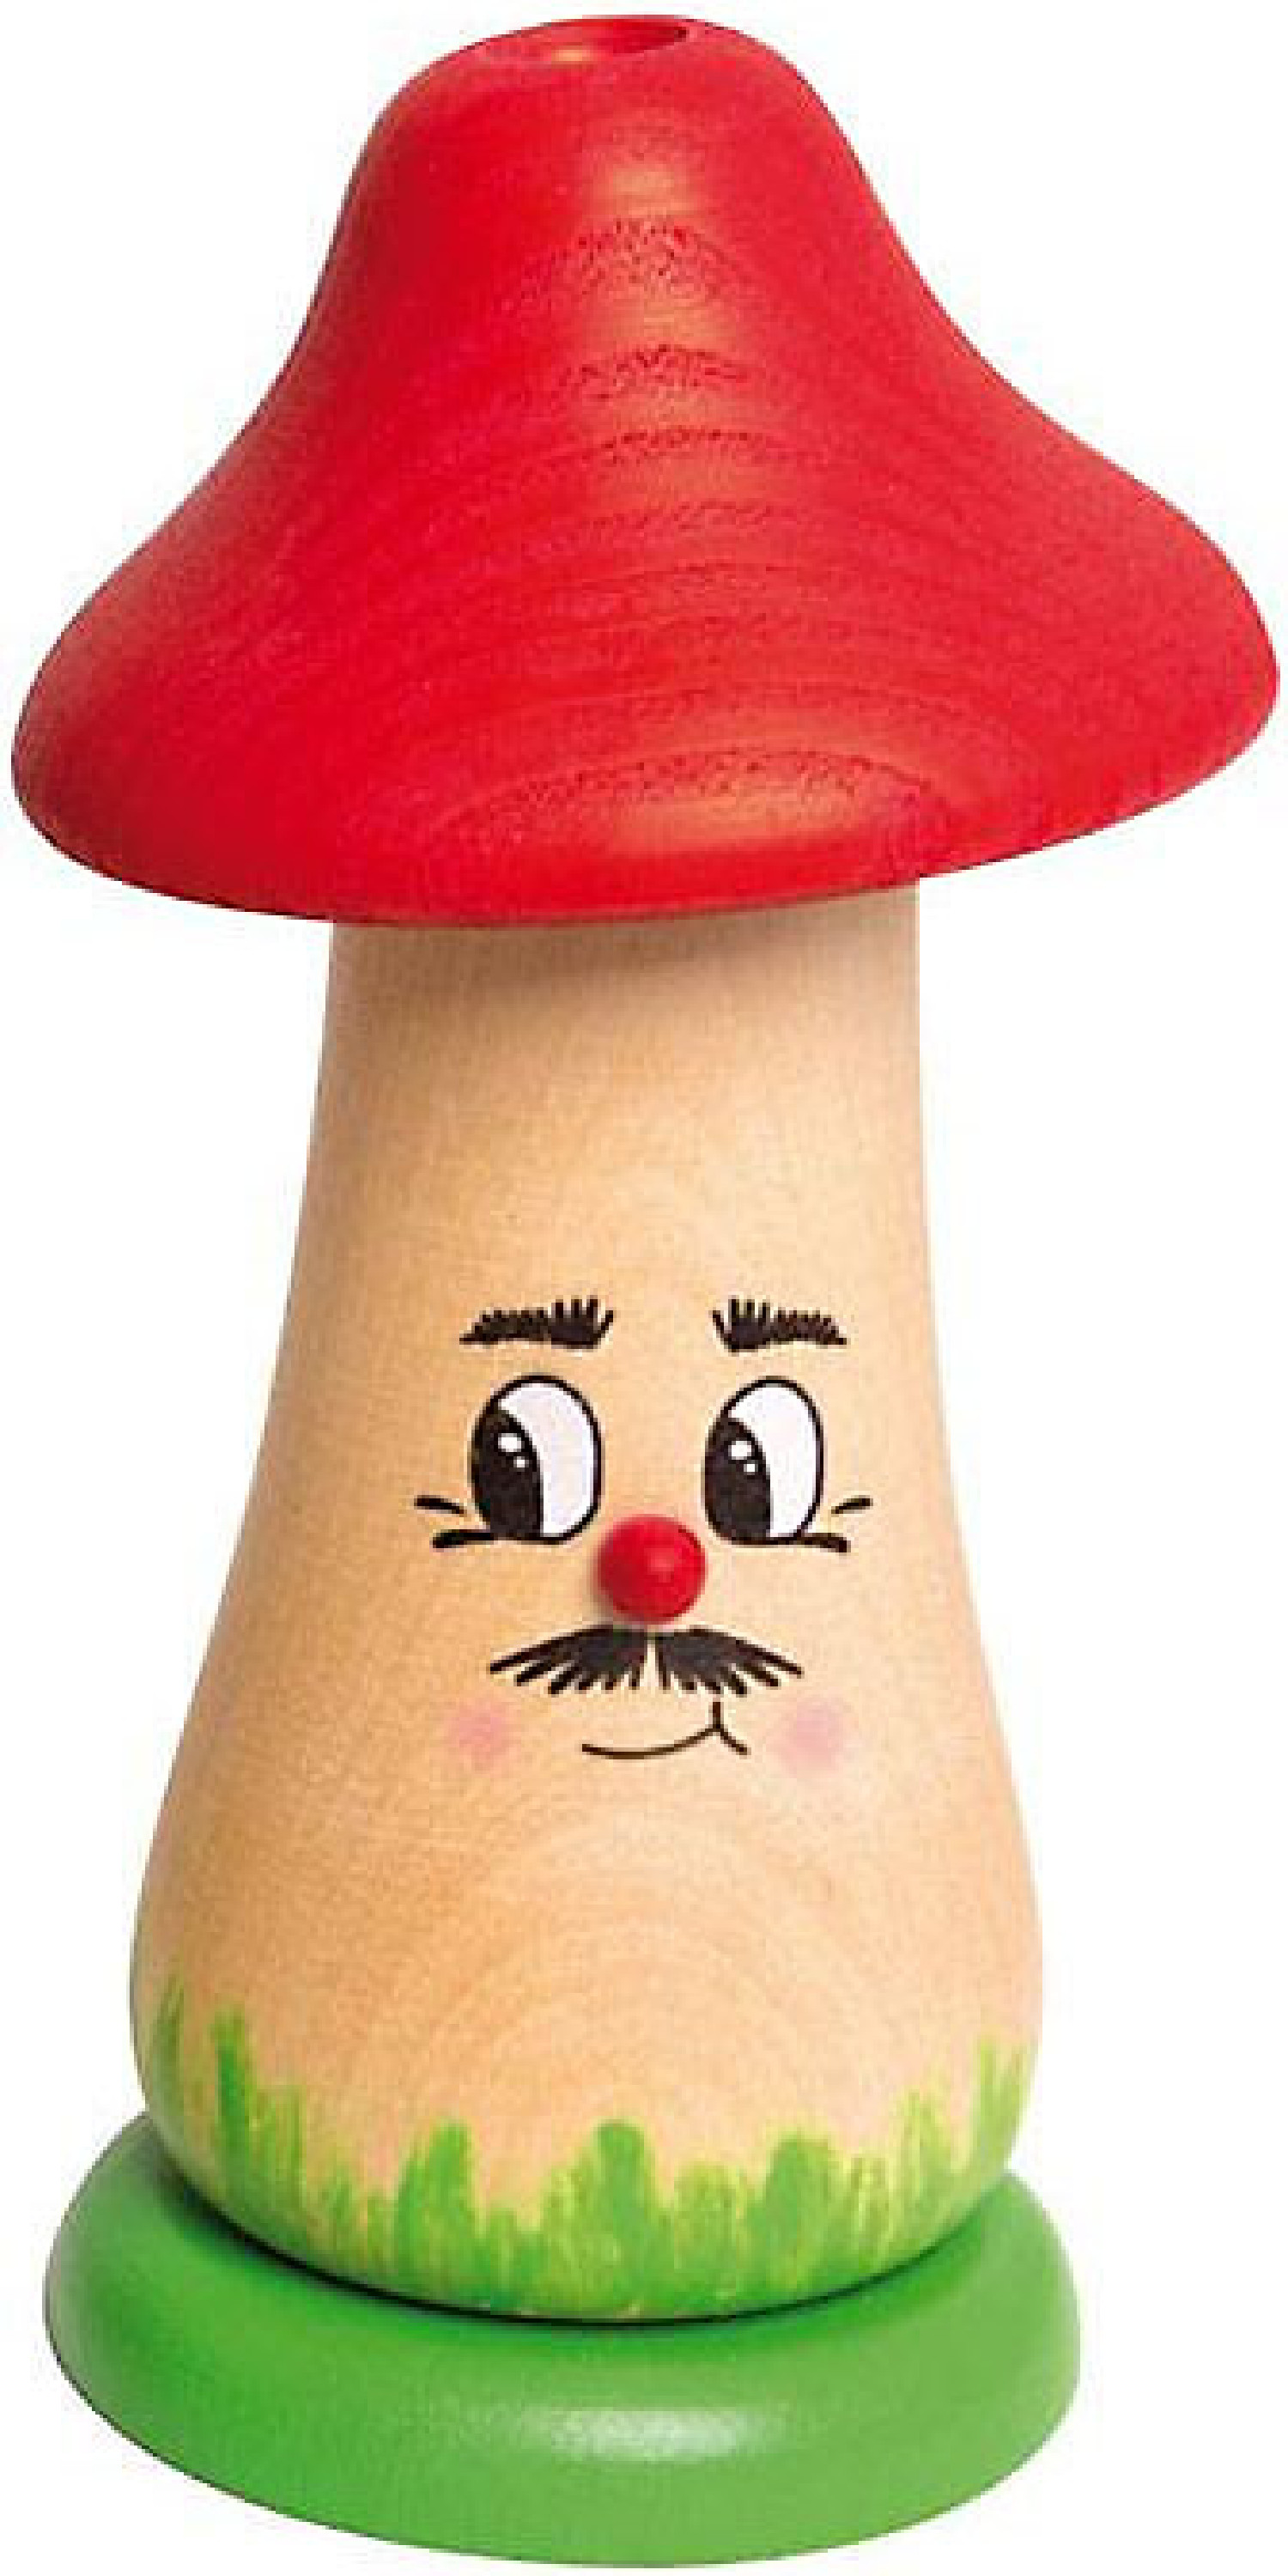 Drechslerei Kuhnert Räucherfigur Rauchpilz mit rotem Hut